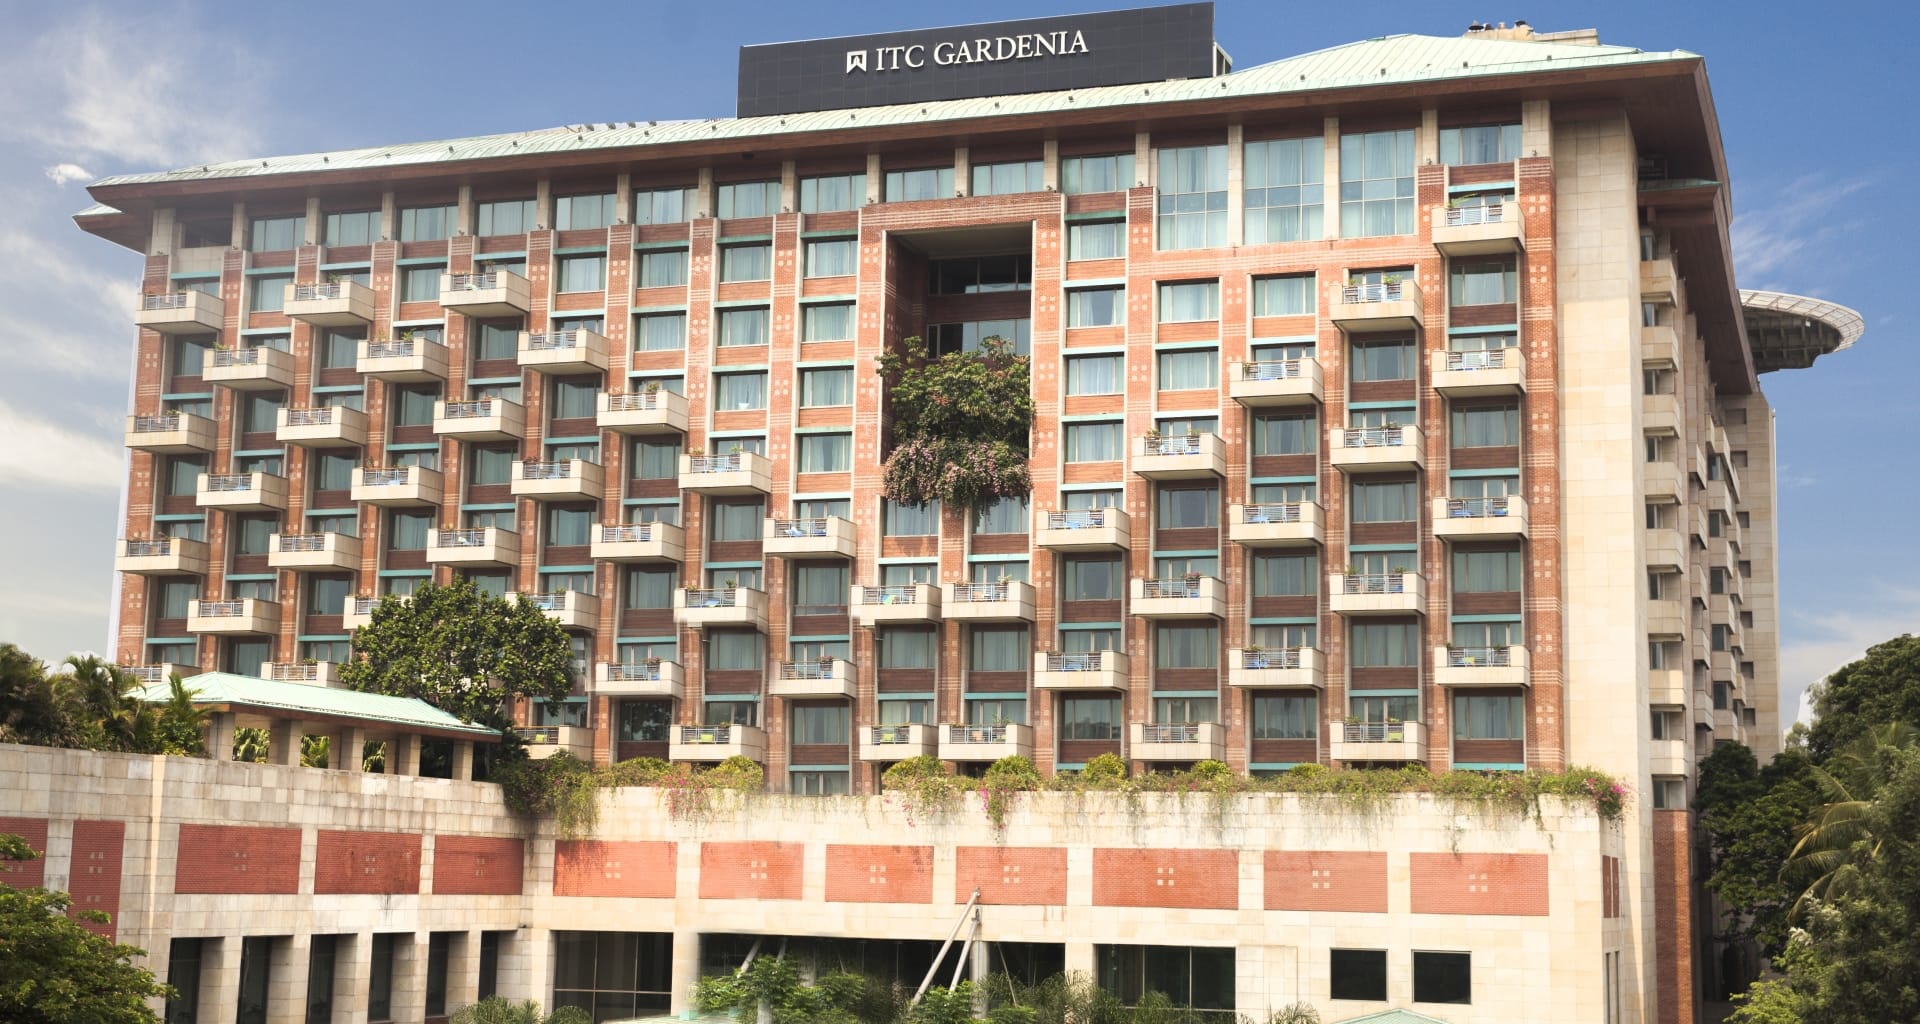 ITC Gardenia Hotel